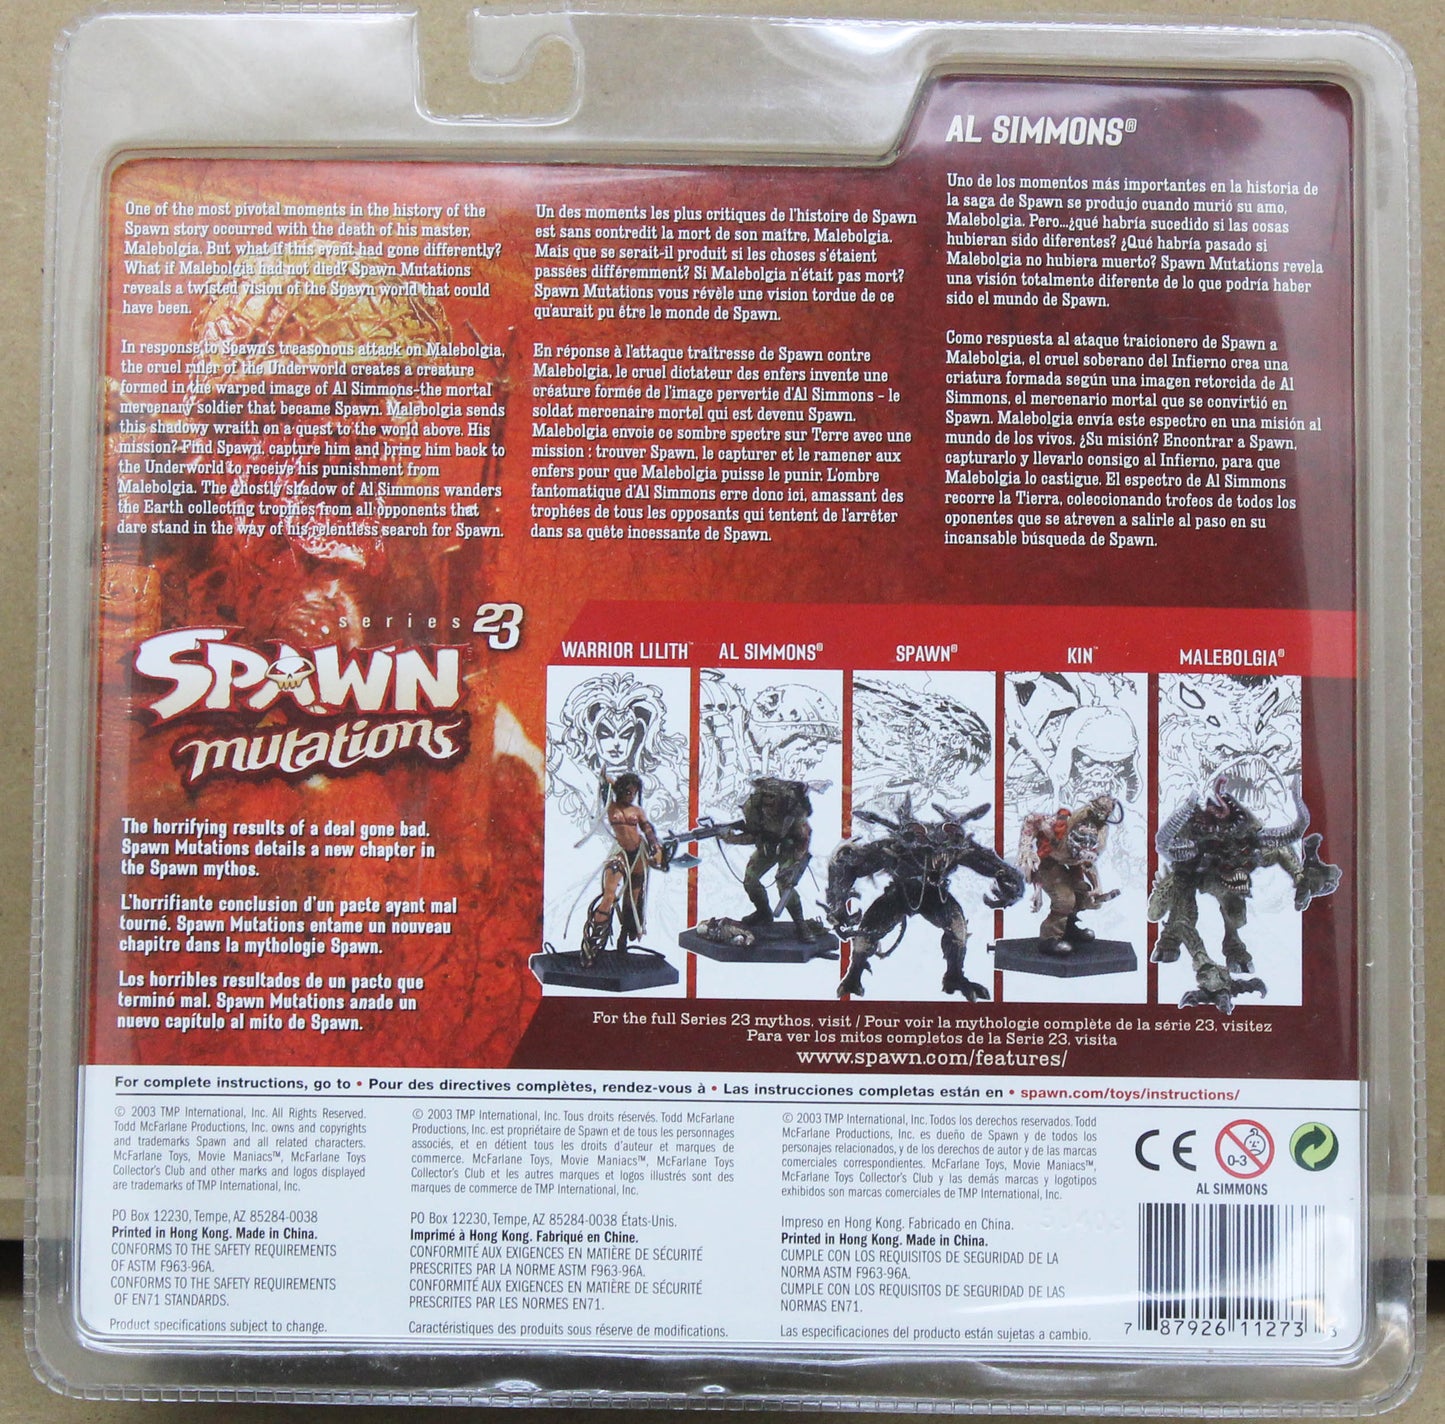 Spawn Mutations - Al Simmons